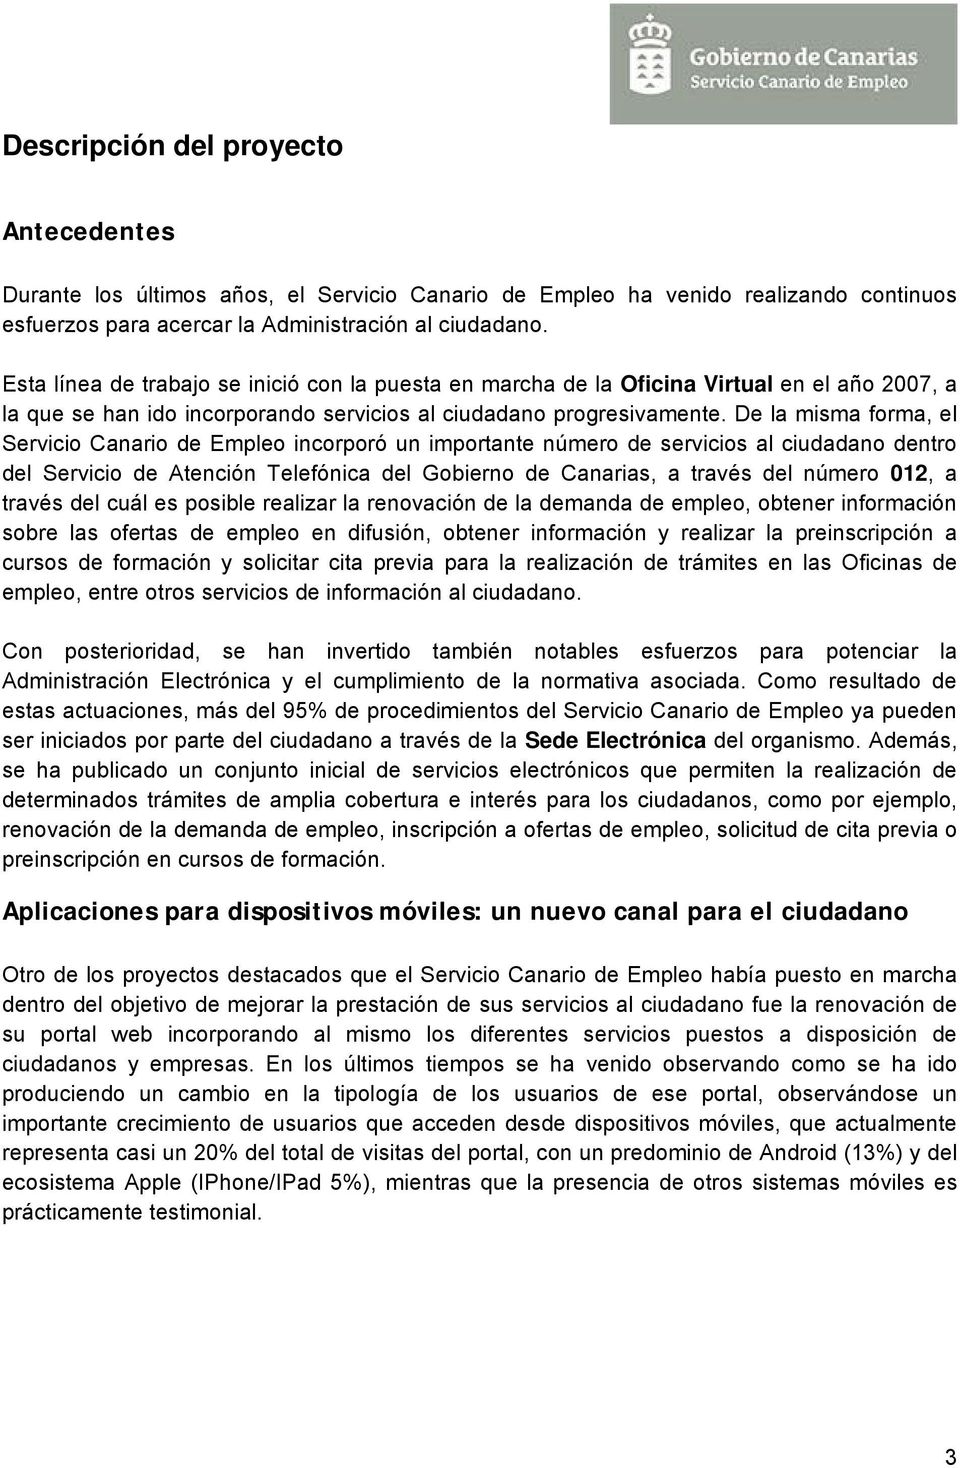 De la misma forma, el Servicio Canario de Empleo incorporó un importante número de servicios al ciudadano dentro del Servicio de Atención Telefónica del Gobierno de Canarias, a través del número 012,